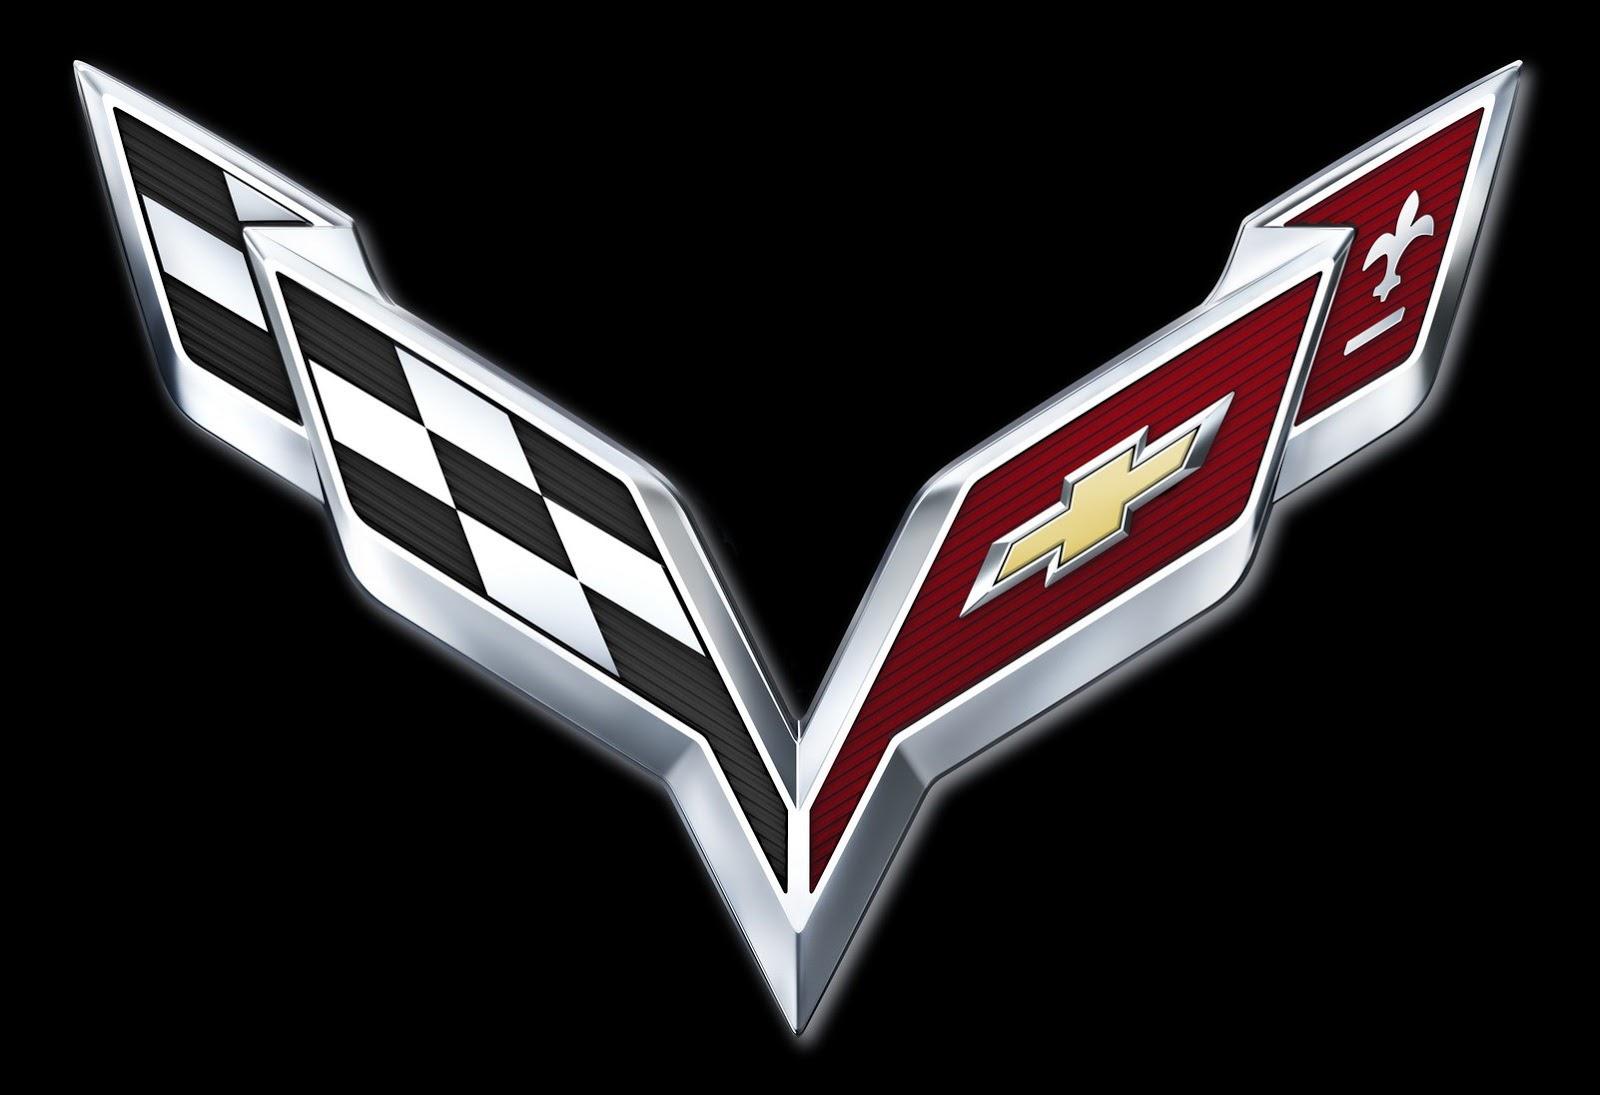 LSX Logo - GM Reveals 2014 Corvette Logo, Confirms C7 Debut Date - LSX Magazine